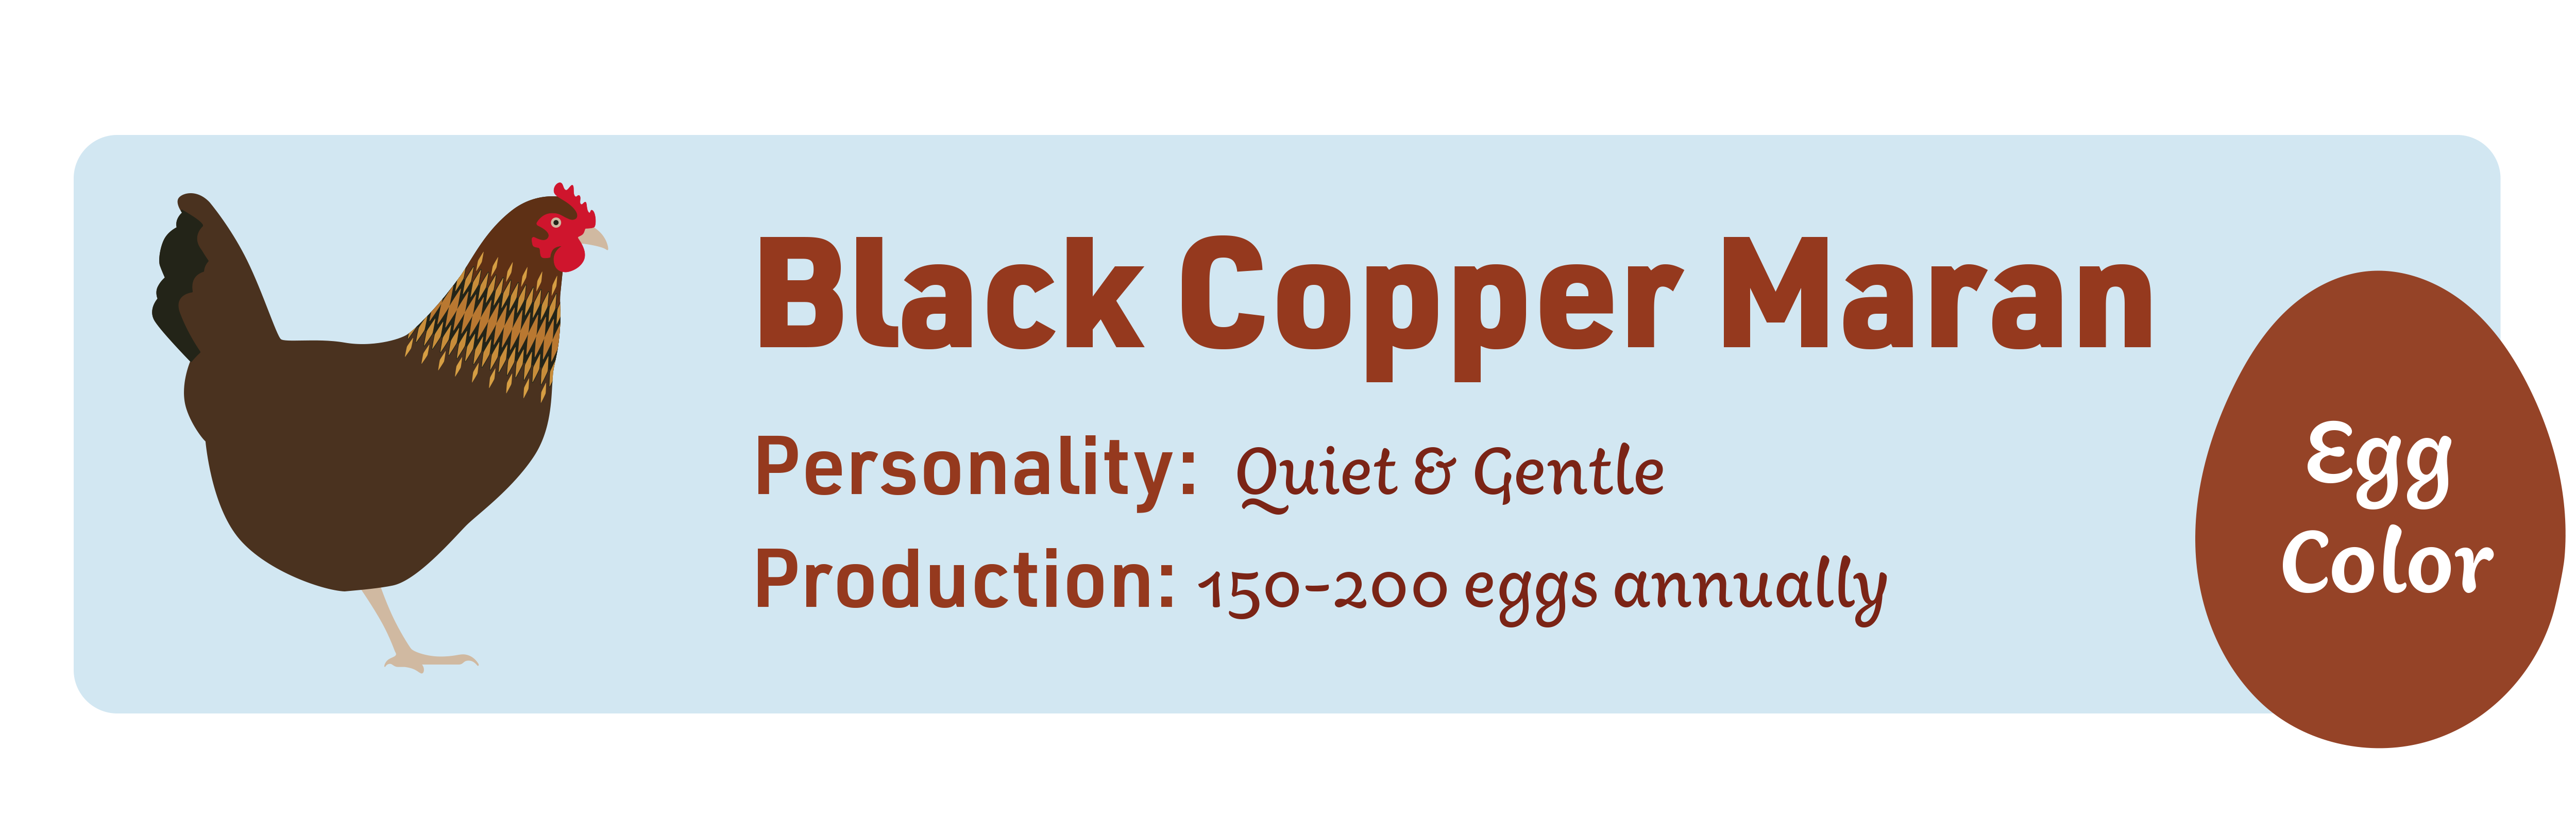 Black Copper Maran_Popular_chicks_v1